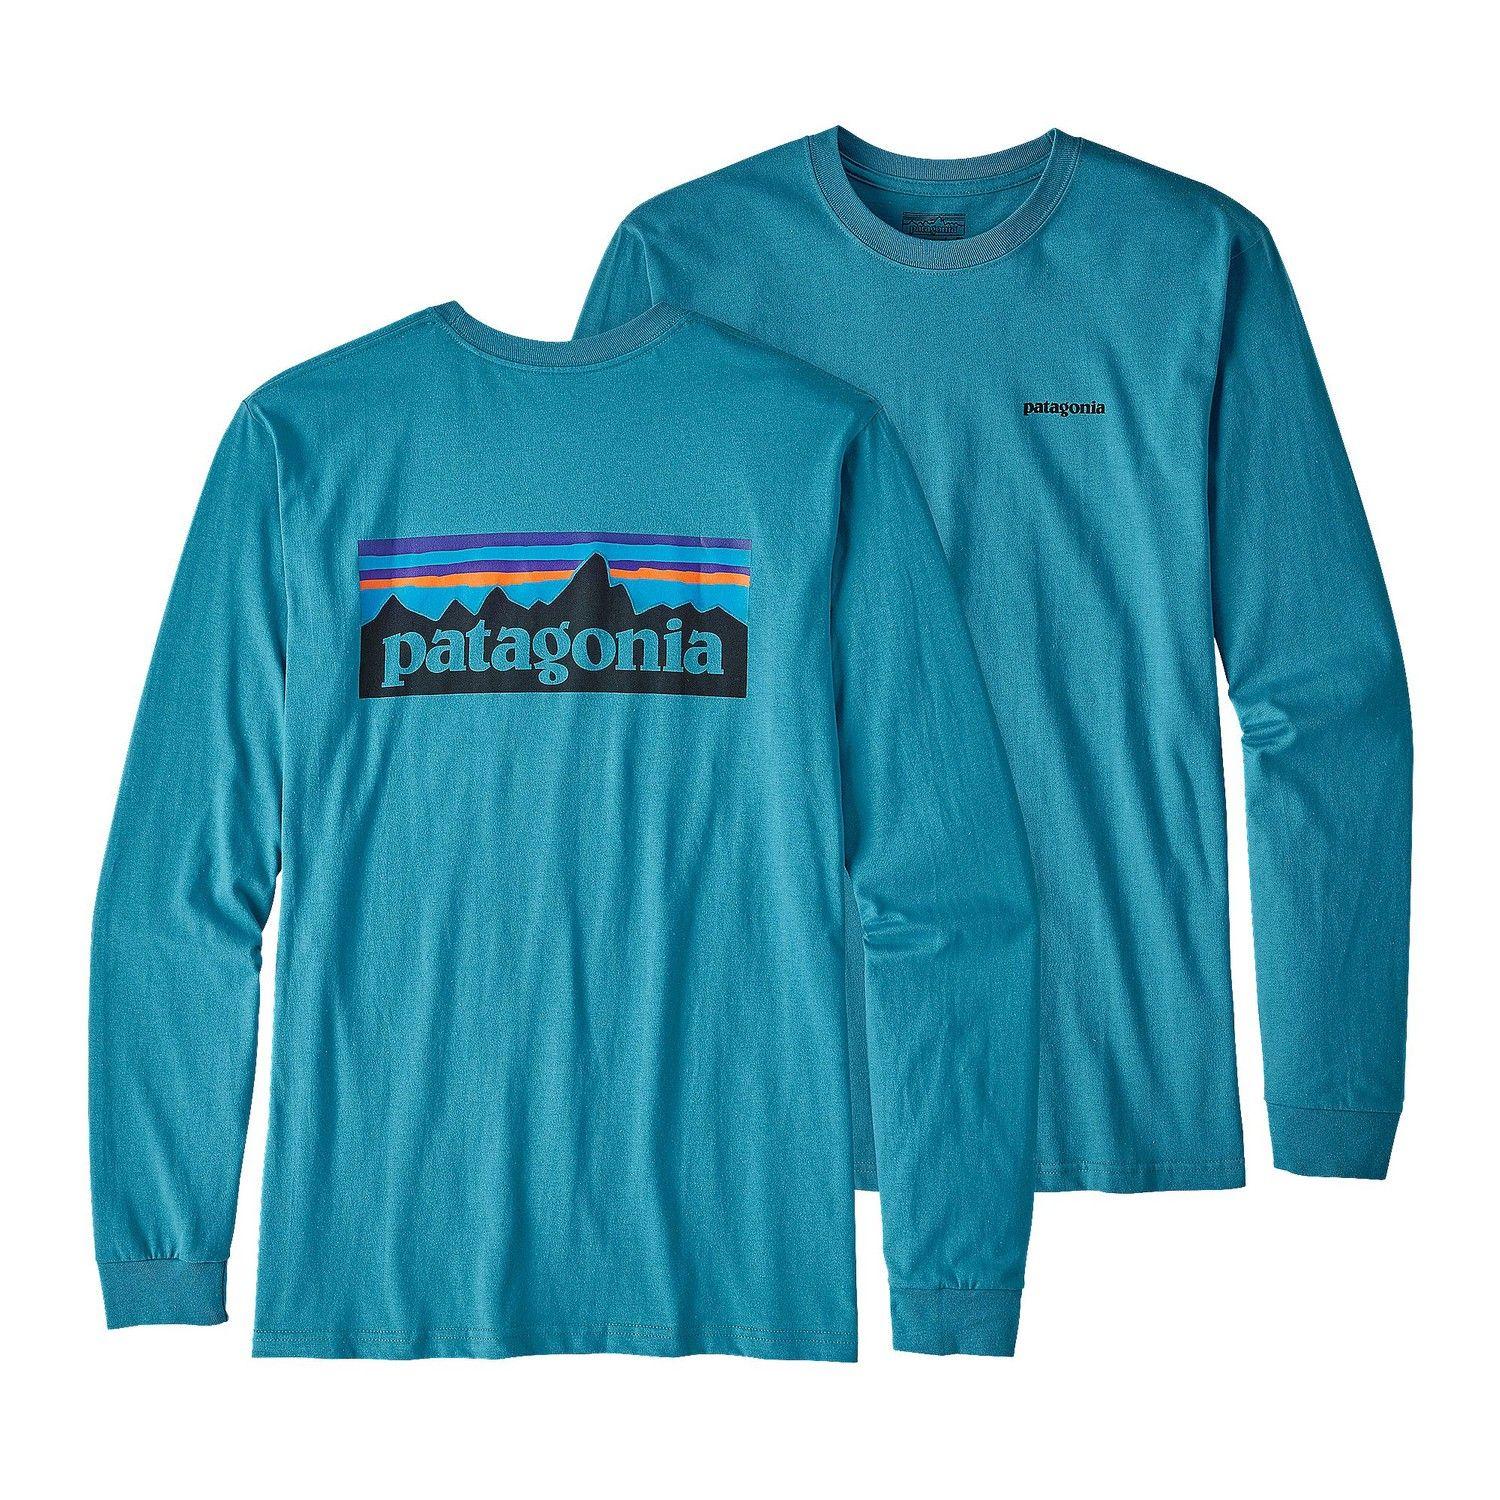 Patagonia Clothing Logo - Patagonia Men's Long Sleeved P 6 Logo Cotton T Shirt